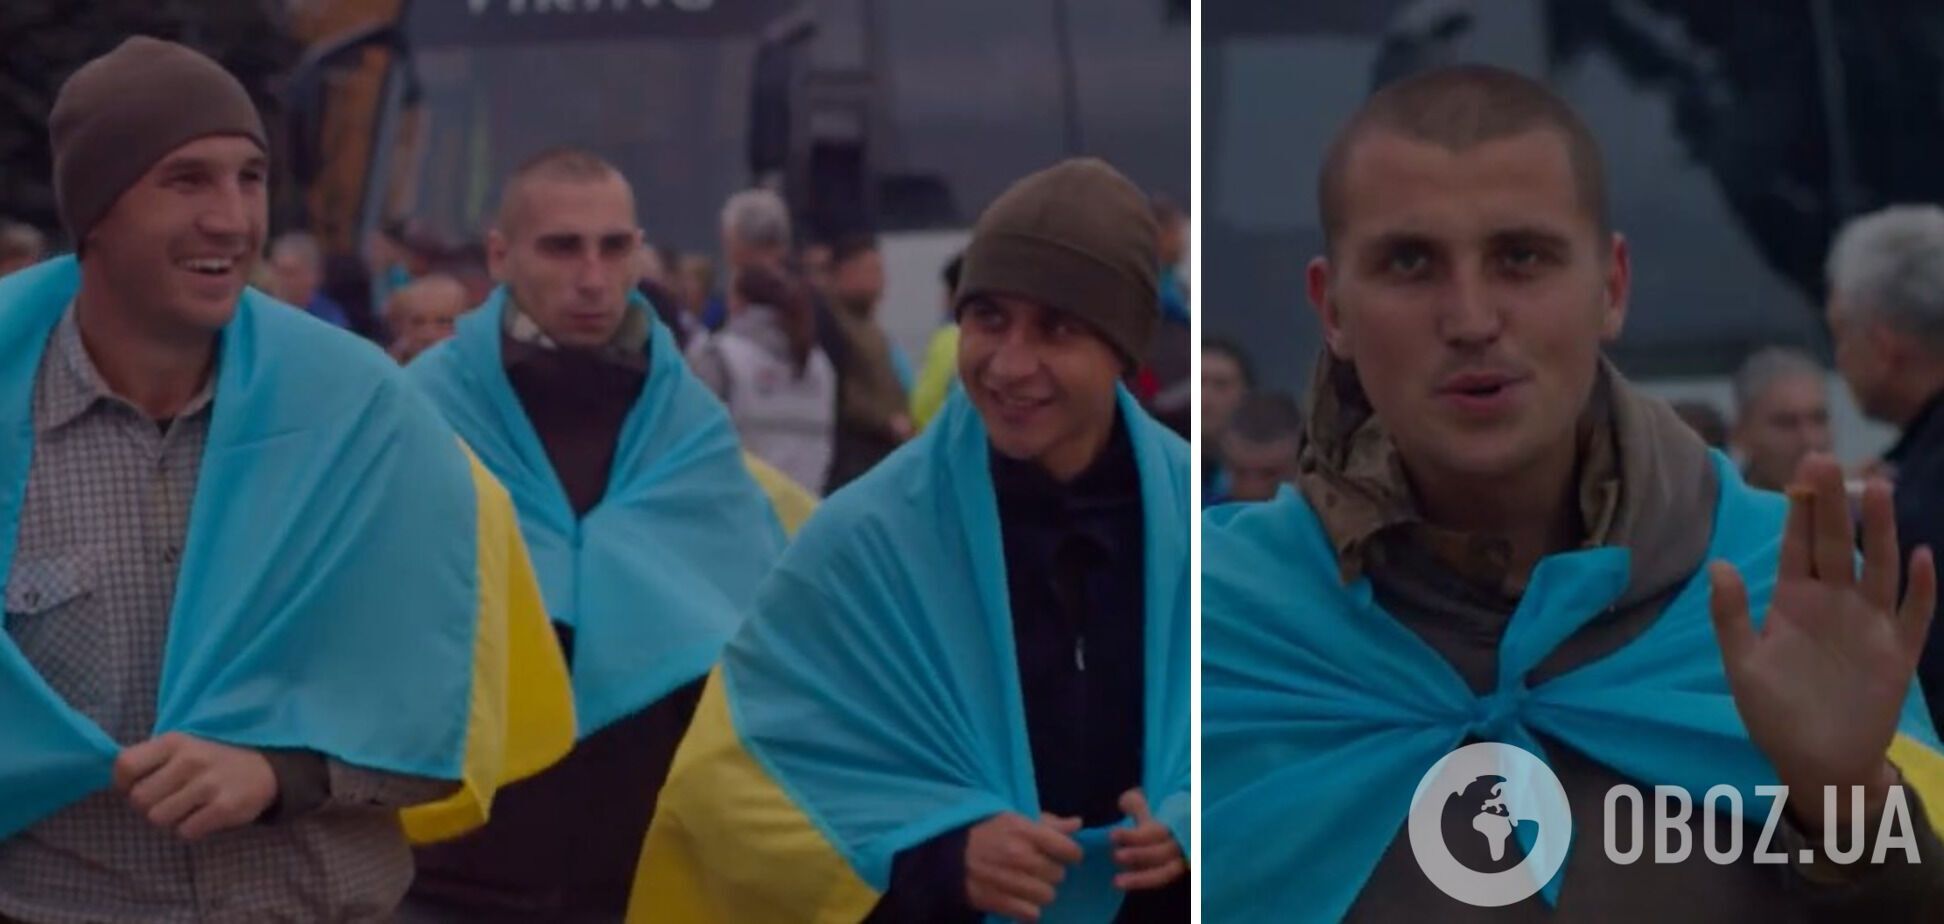 ''Сонце, я вдома'': у мережі показали зворушливі кадри повернення з полону українських прикордонників. Відео 